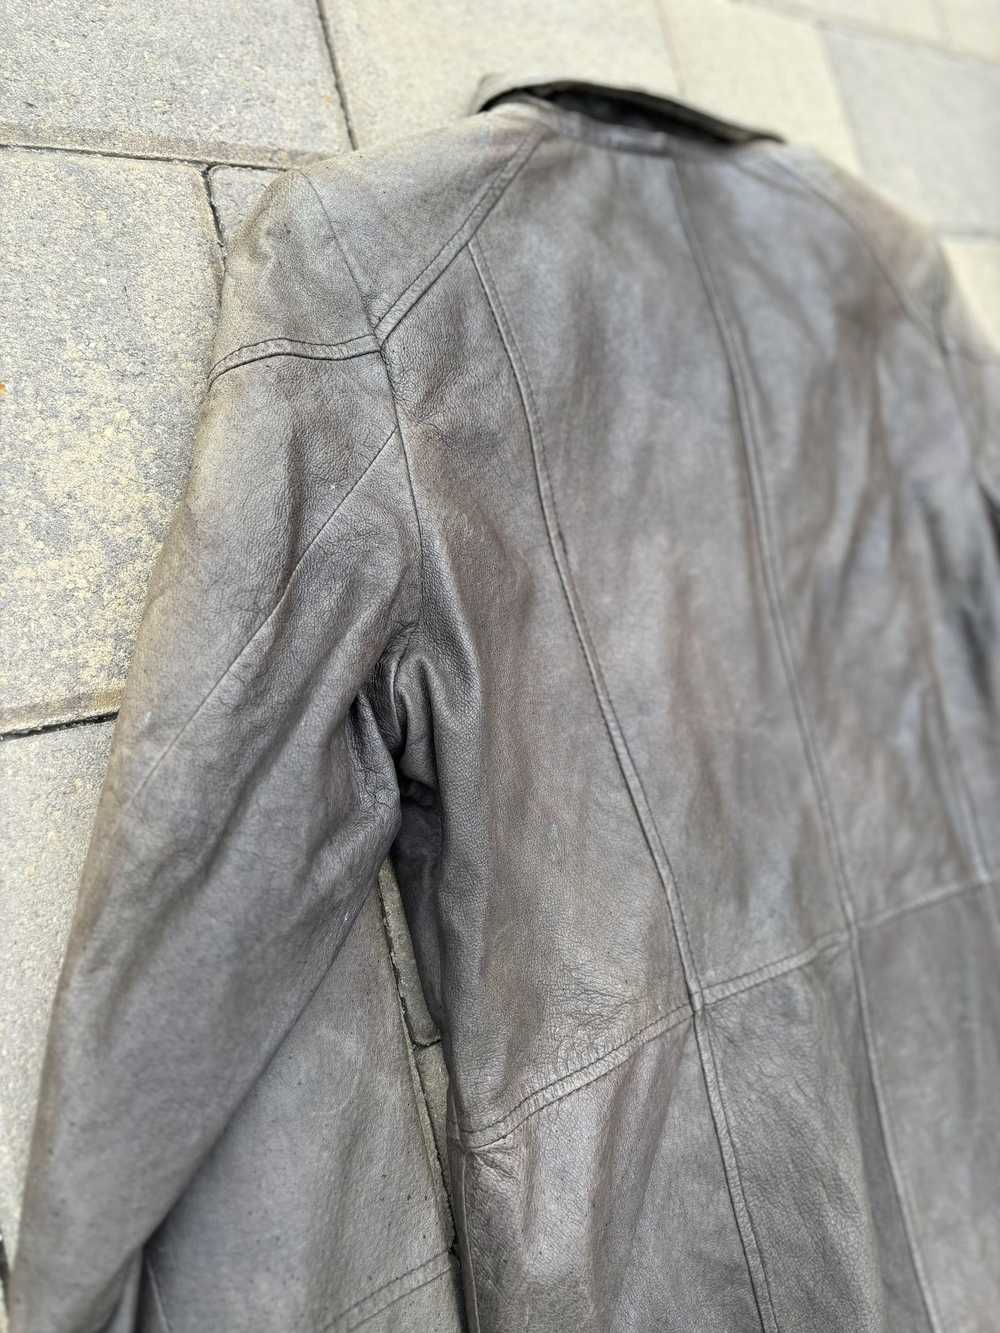 Leather Jacket × Vintage Faded Leather jacket EMC - image 4